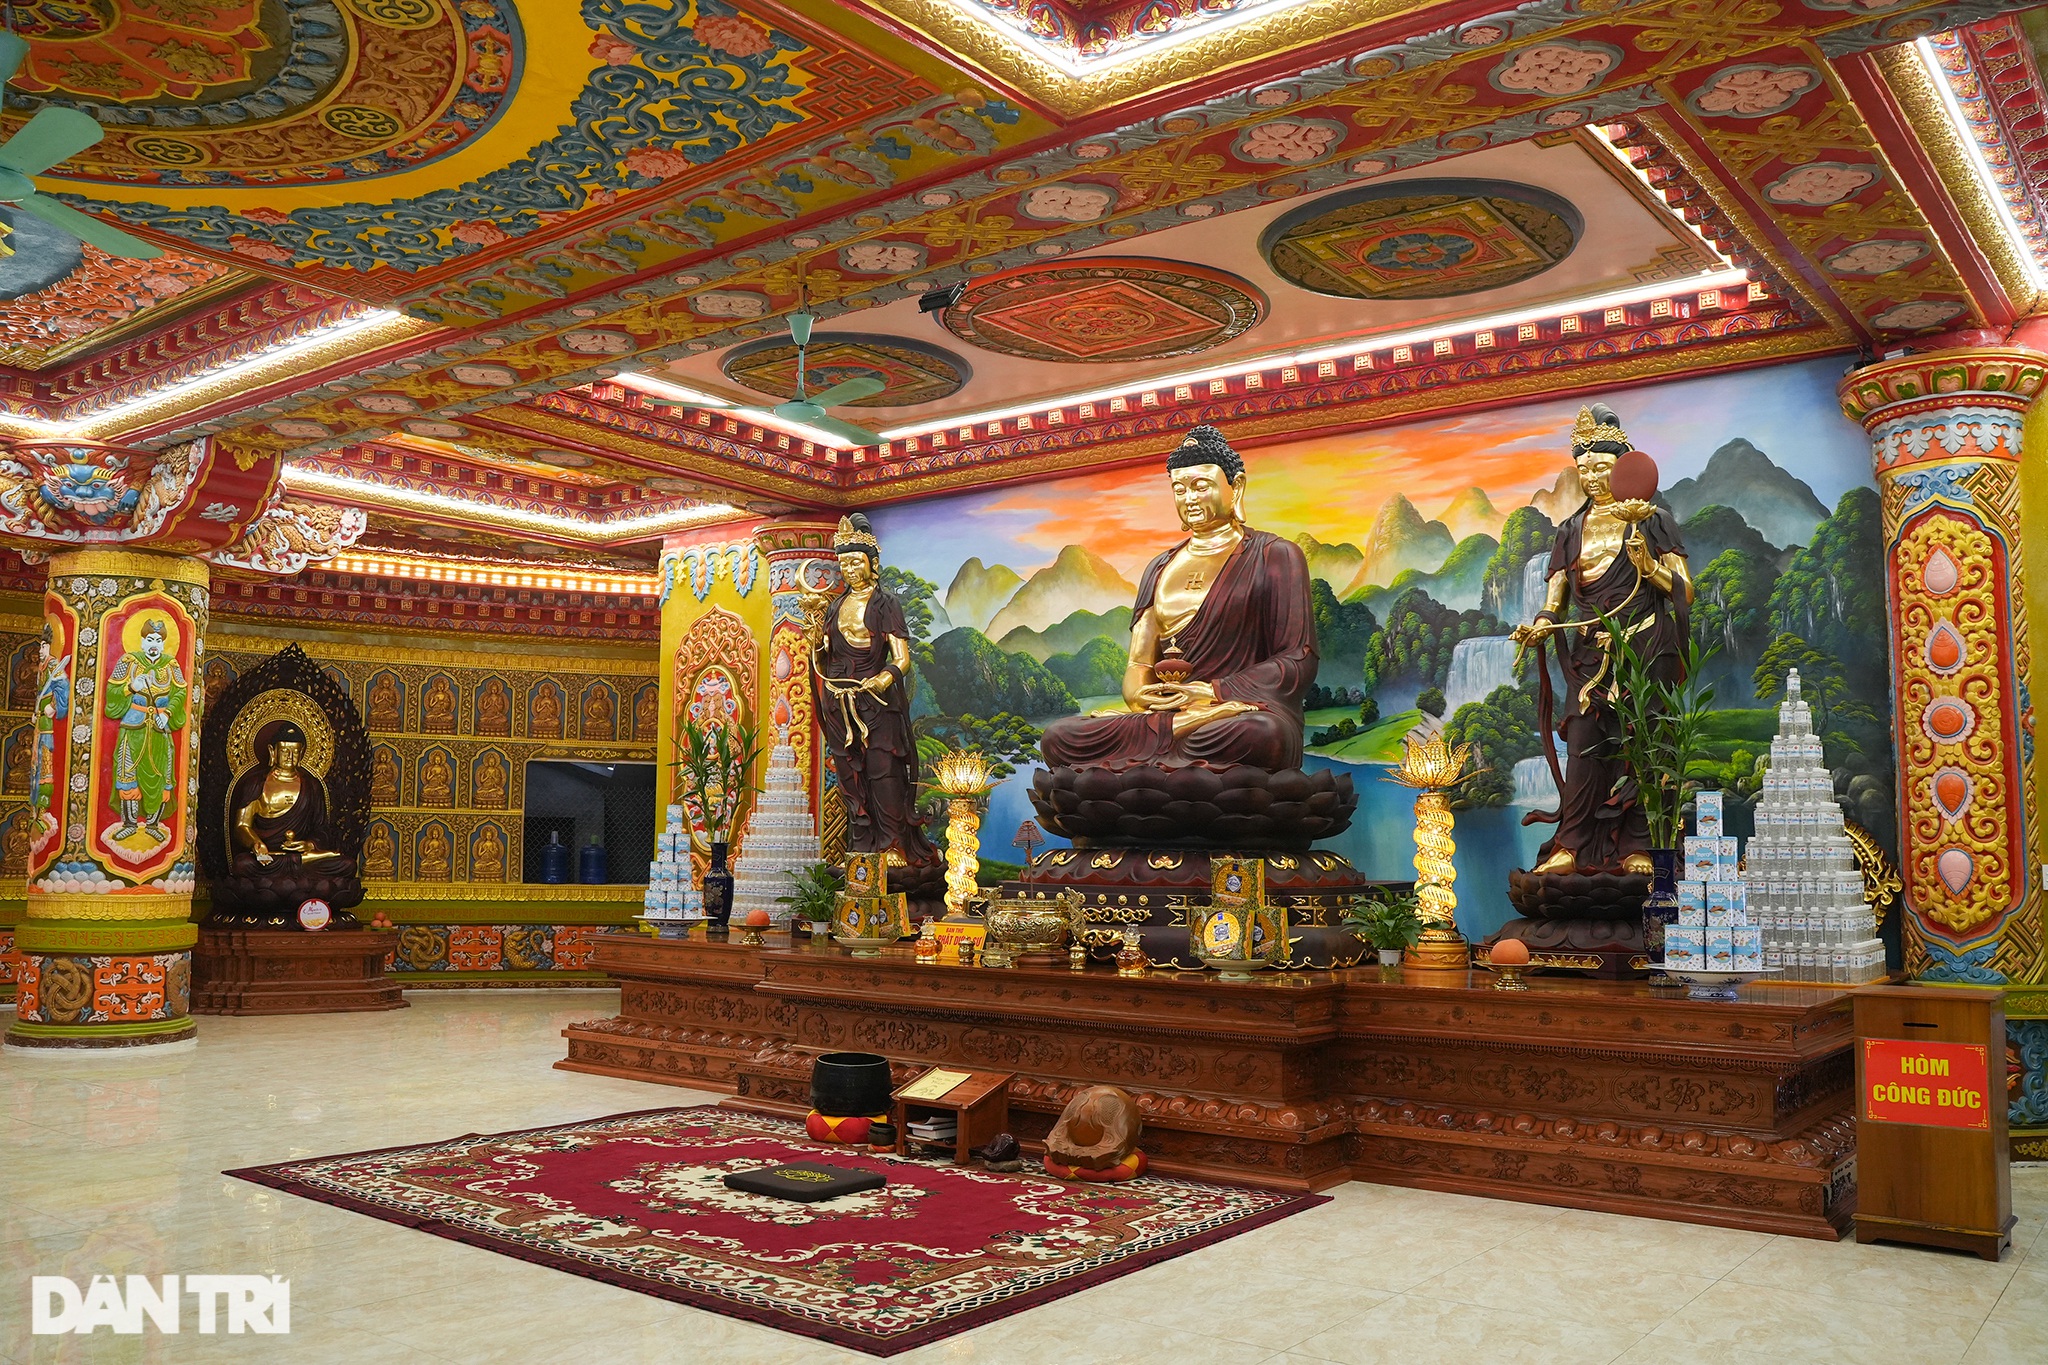 Đại tượng Phật cao nhất Đông Nam Á ở Hà Nội có trái tim ngọc nặng hơn 1 tấn - 11